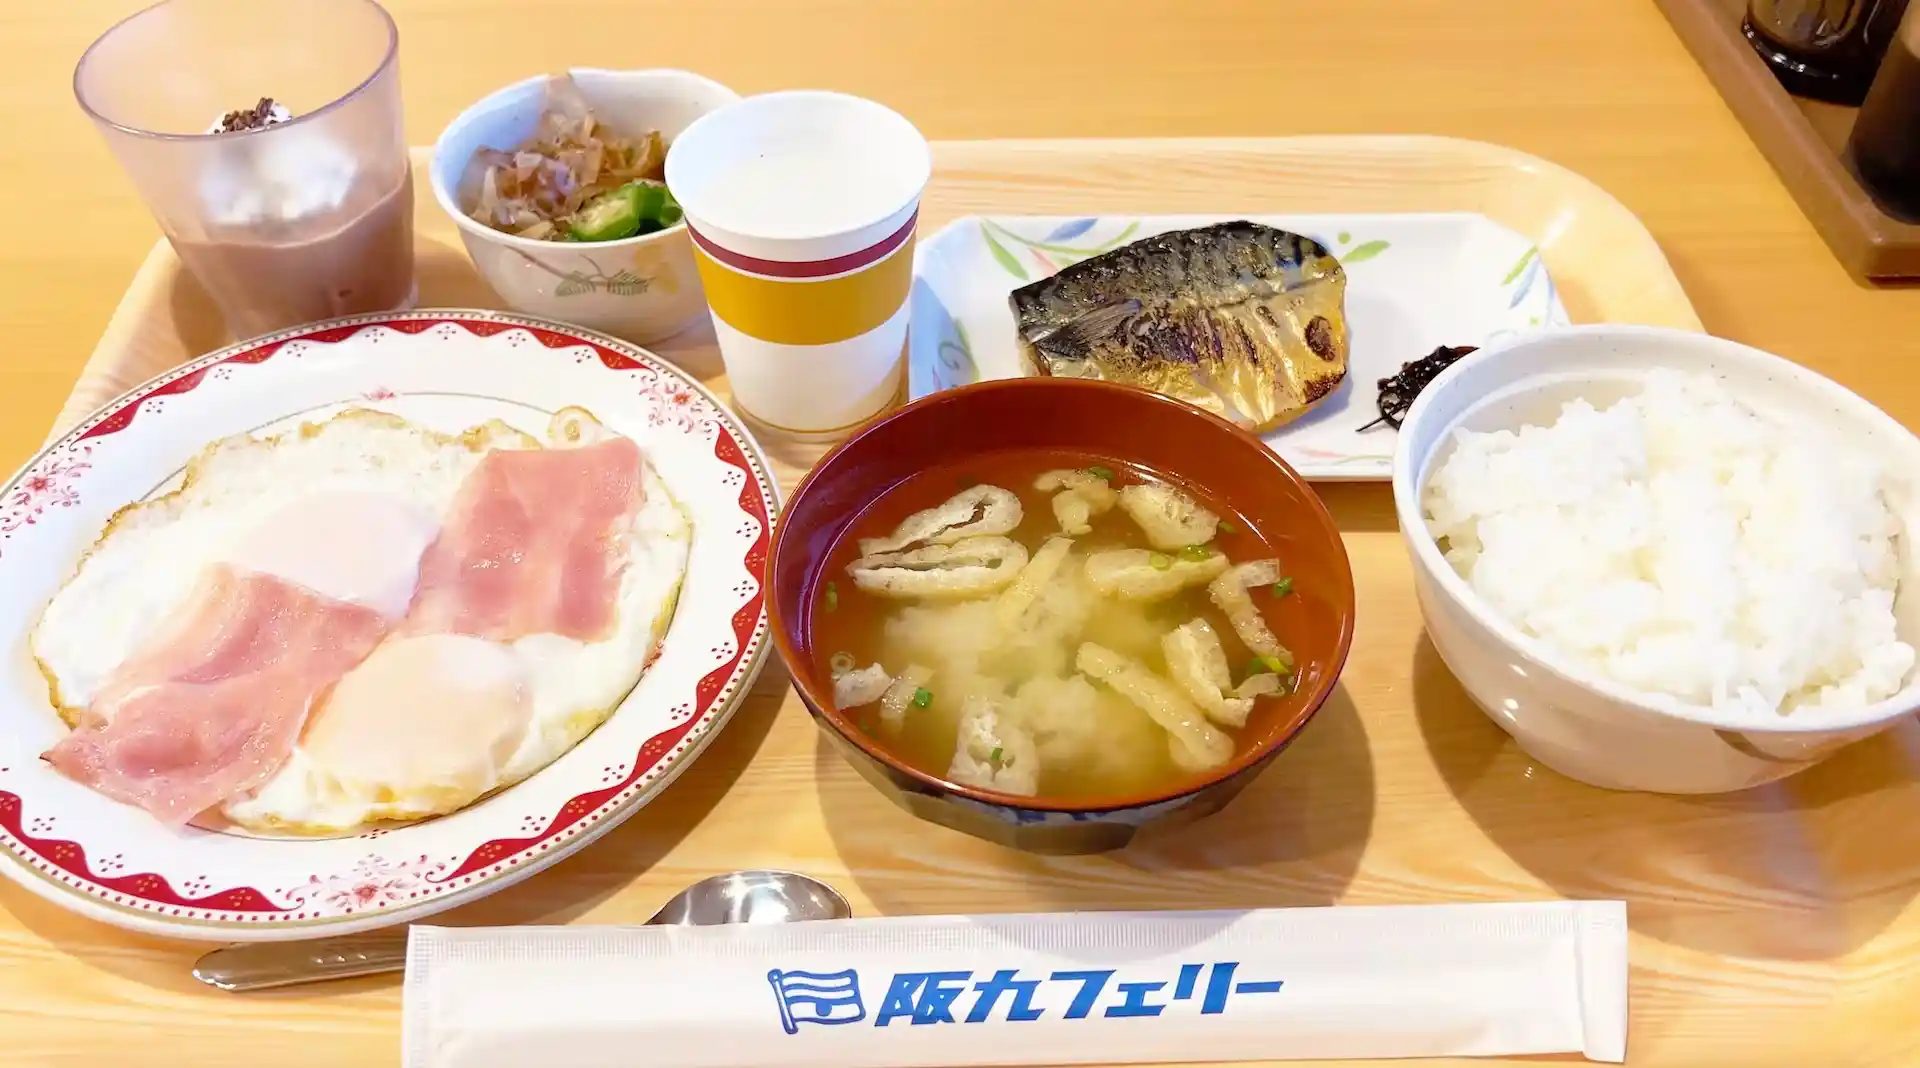 阪九轮渡Settsu号船内餐厅早餐菜单